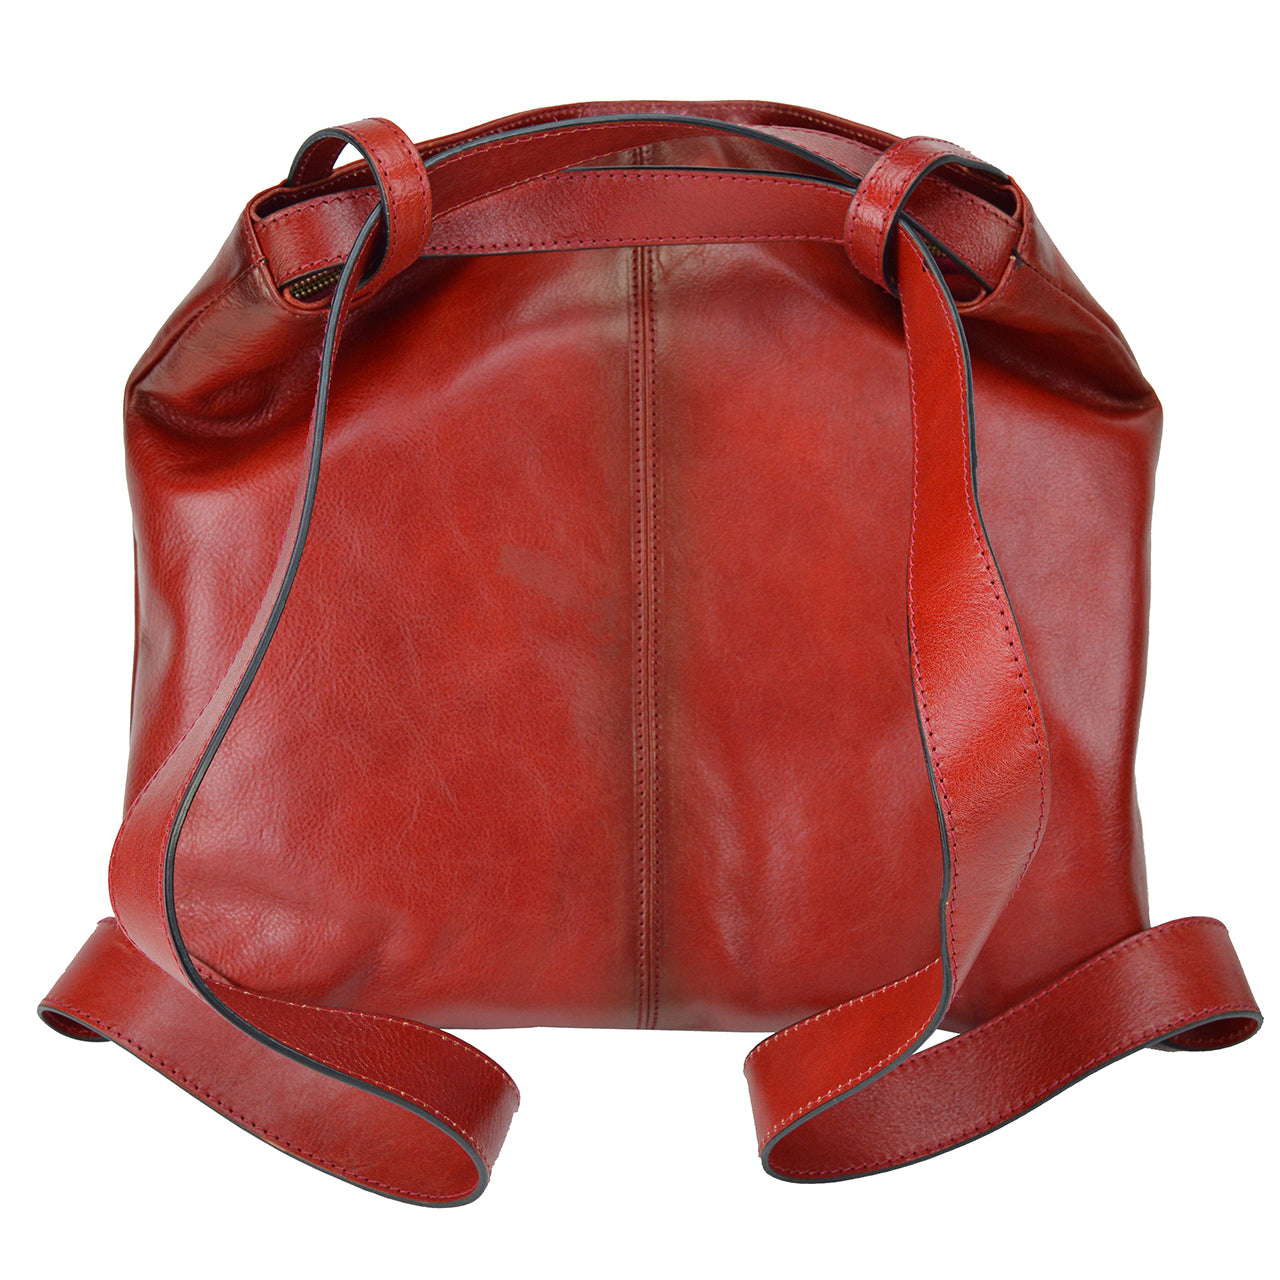 Pratesi Rosano B476 Shoulder Bag in genuine Italian leather